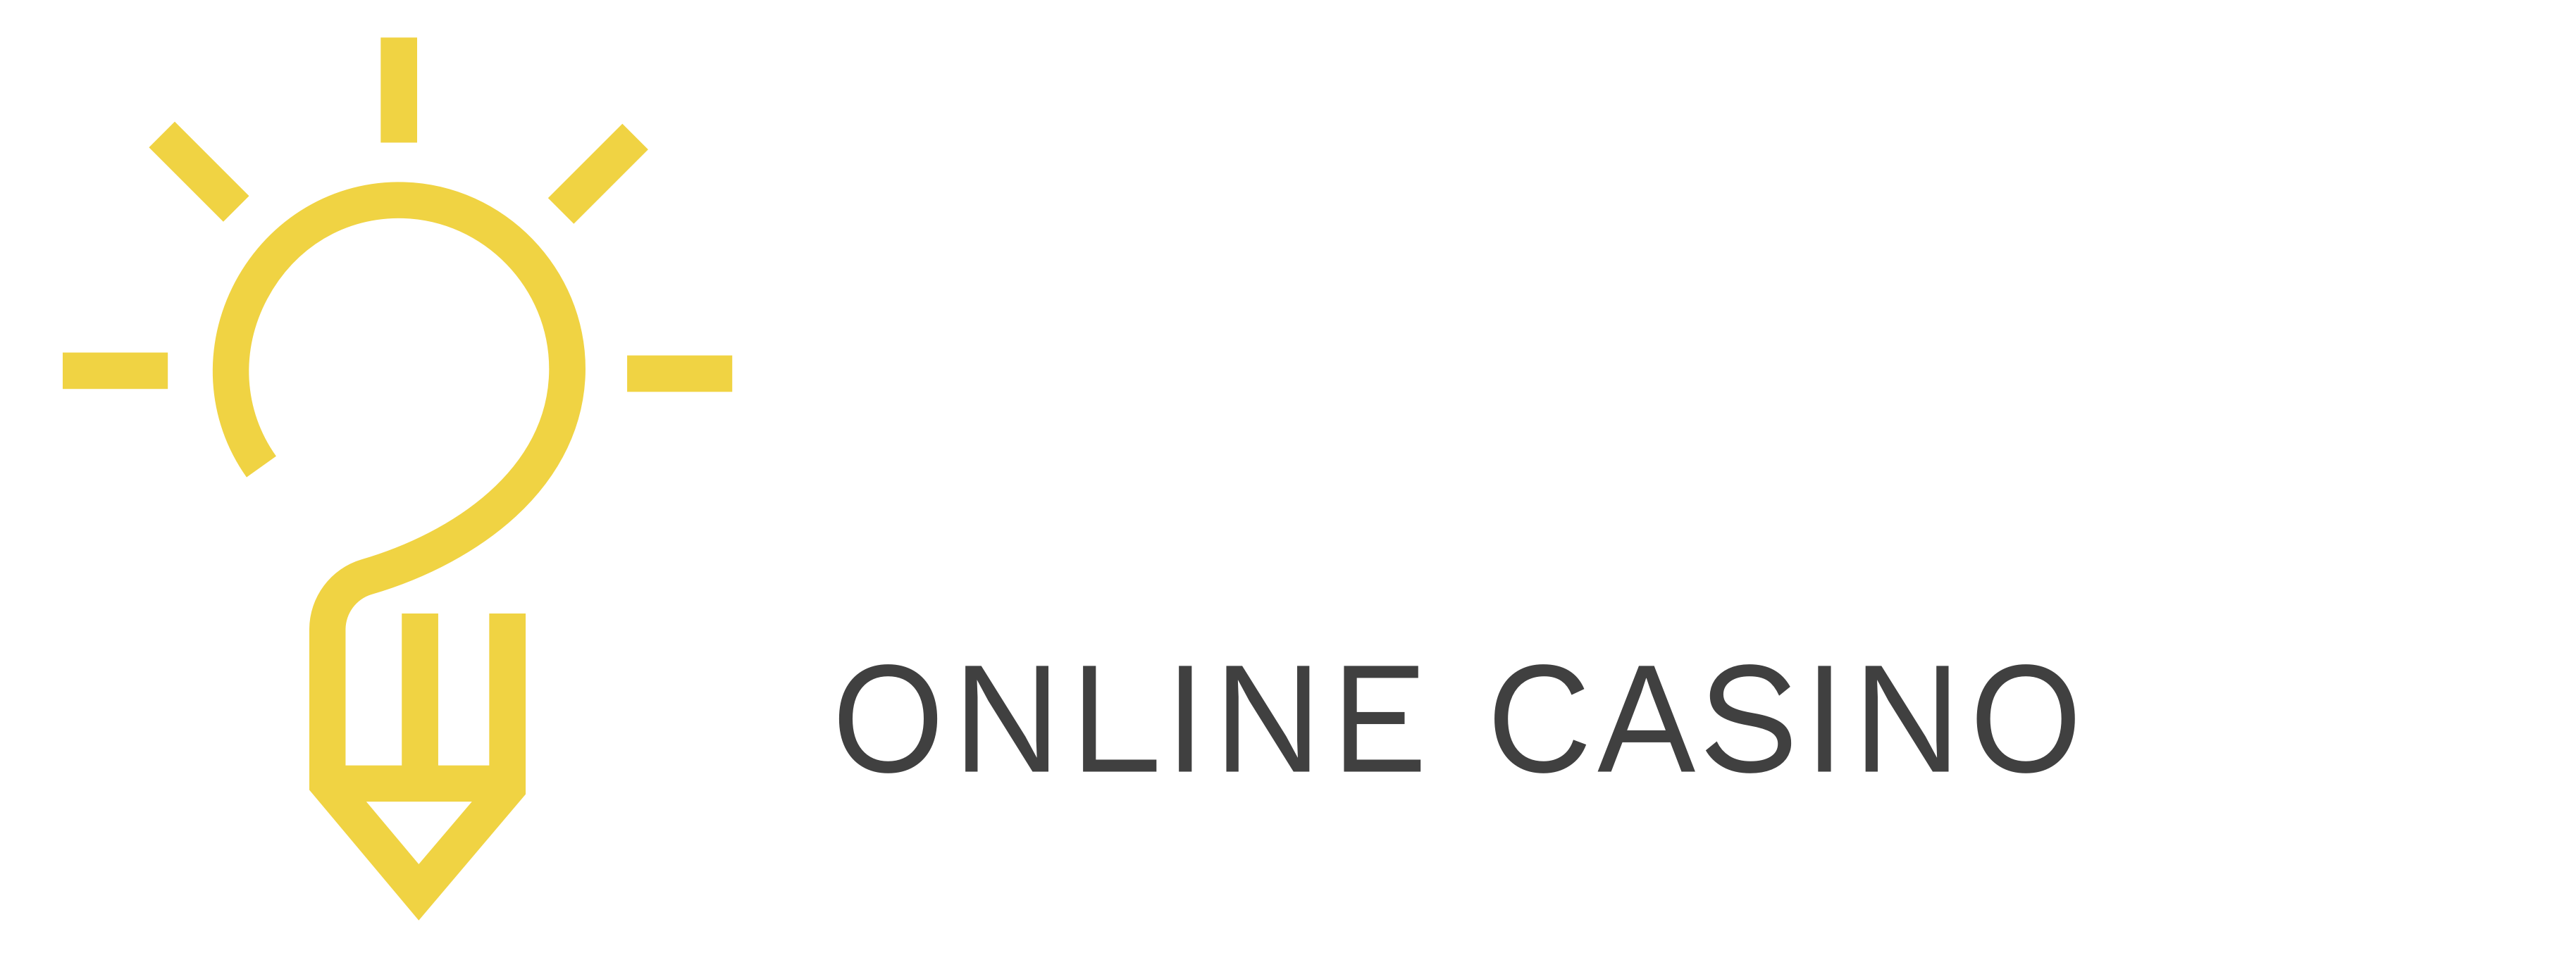 Moshitoshi